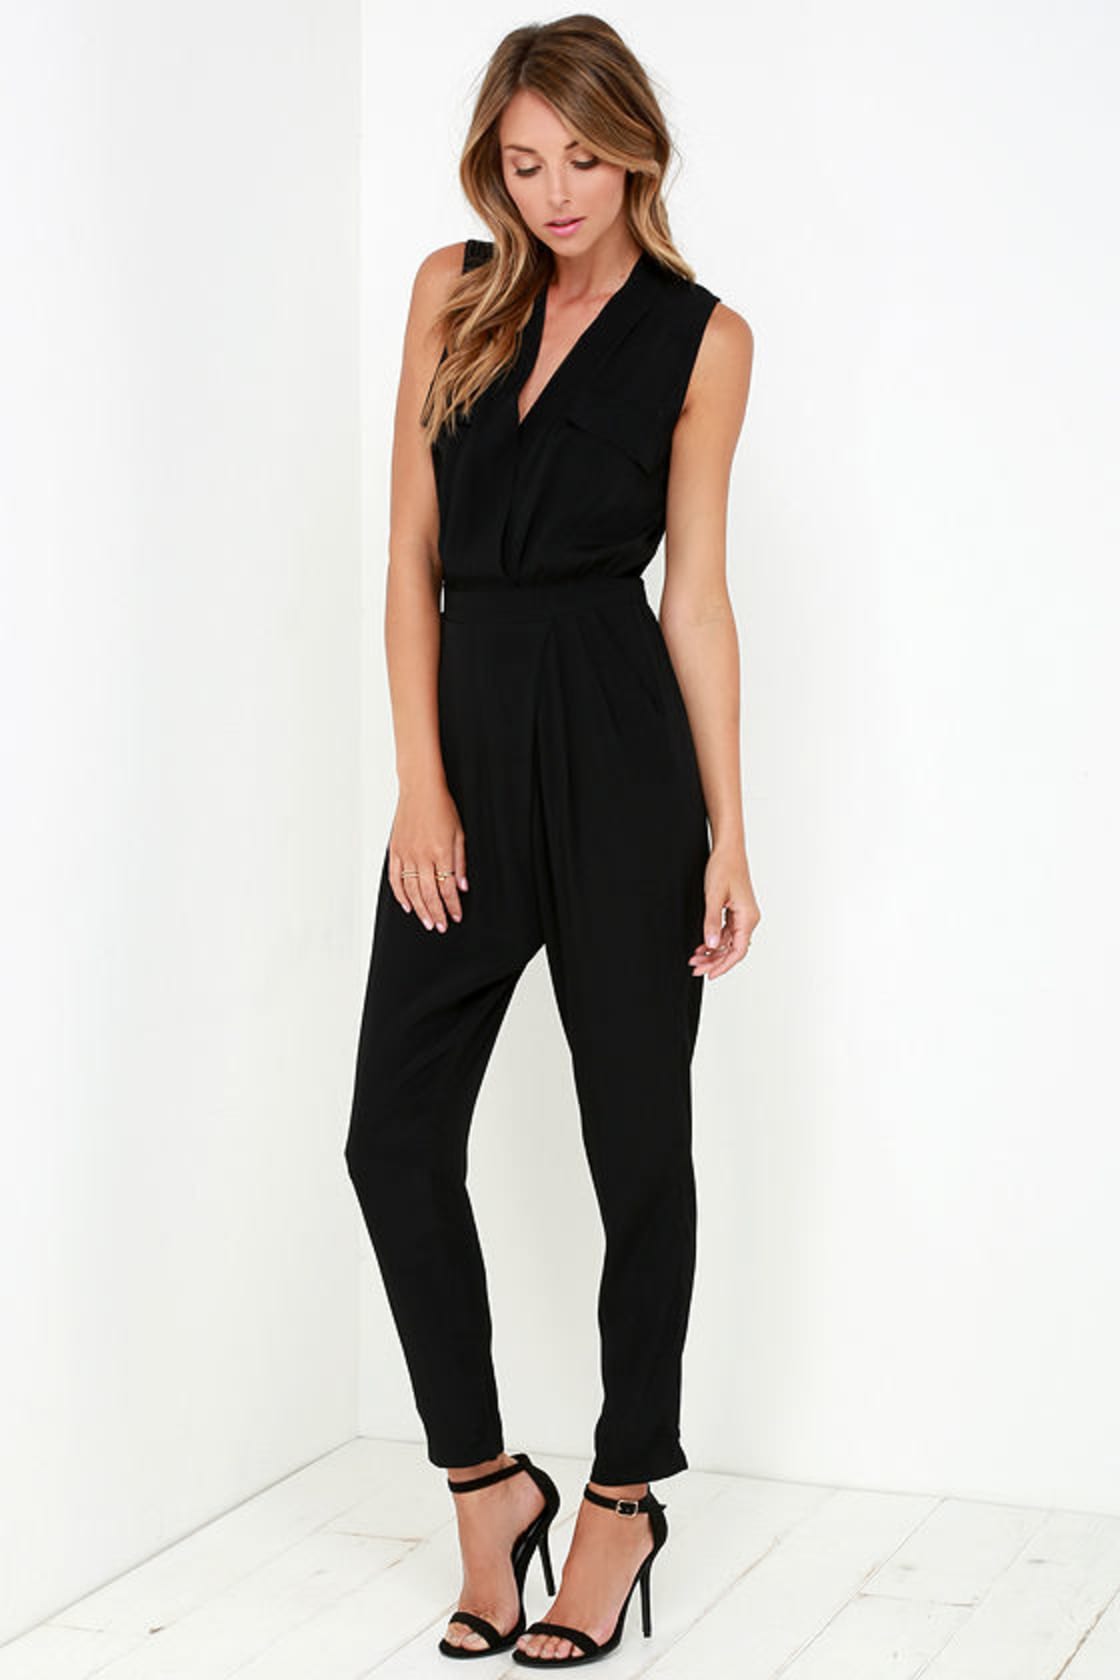 Stylish Black Jumpsuit - Sleeveless Jumpsuit - Black Romper - $54.00 ...